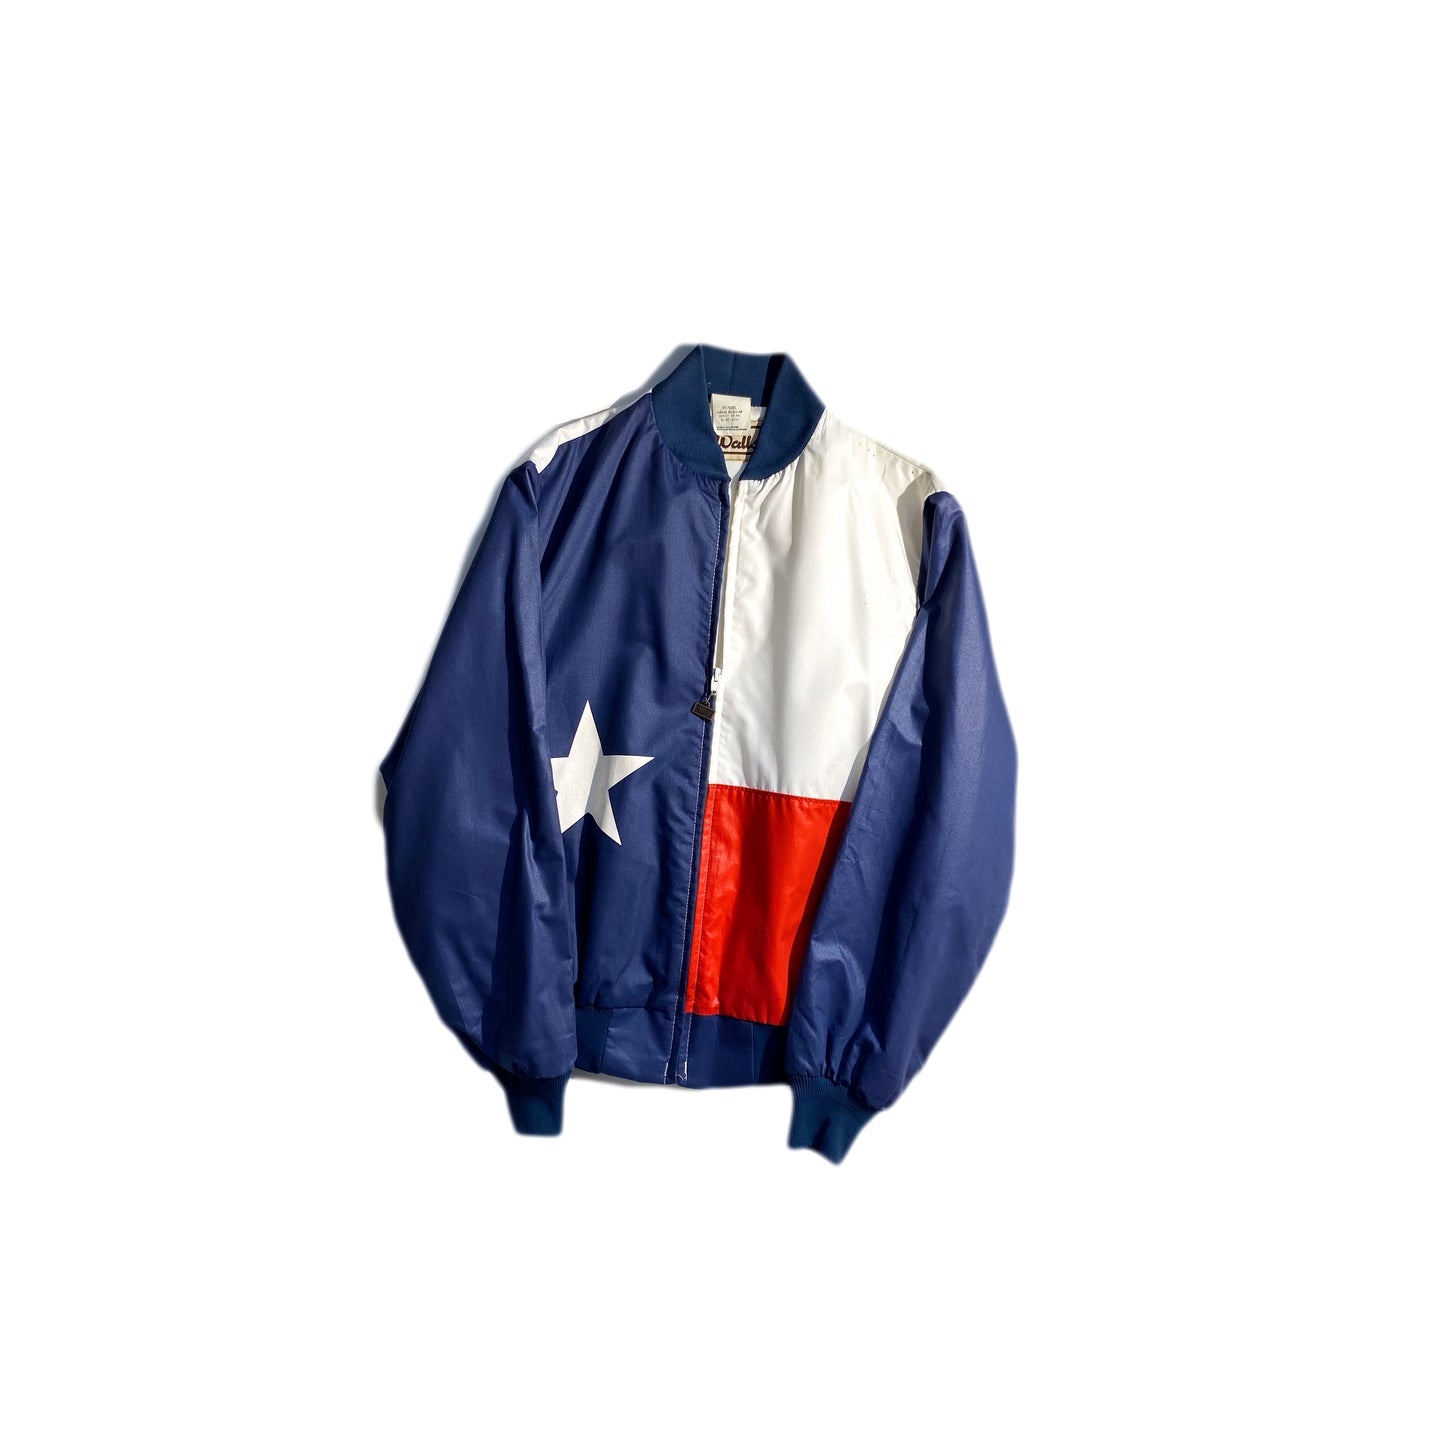 Vintage Texas Jacket VTG WALLS